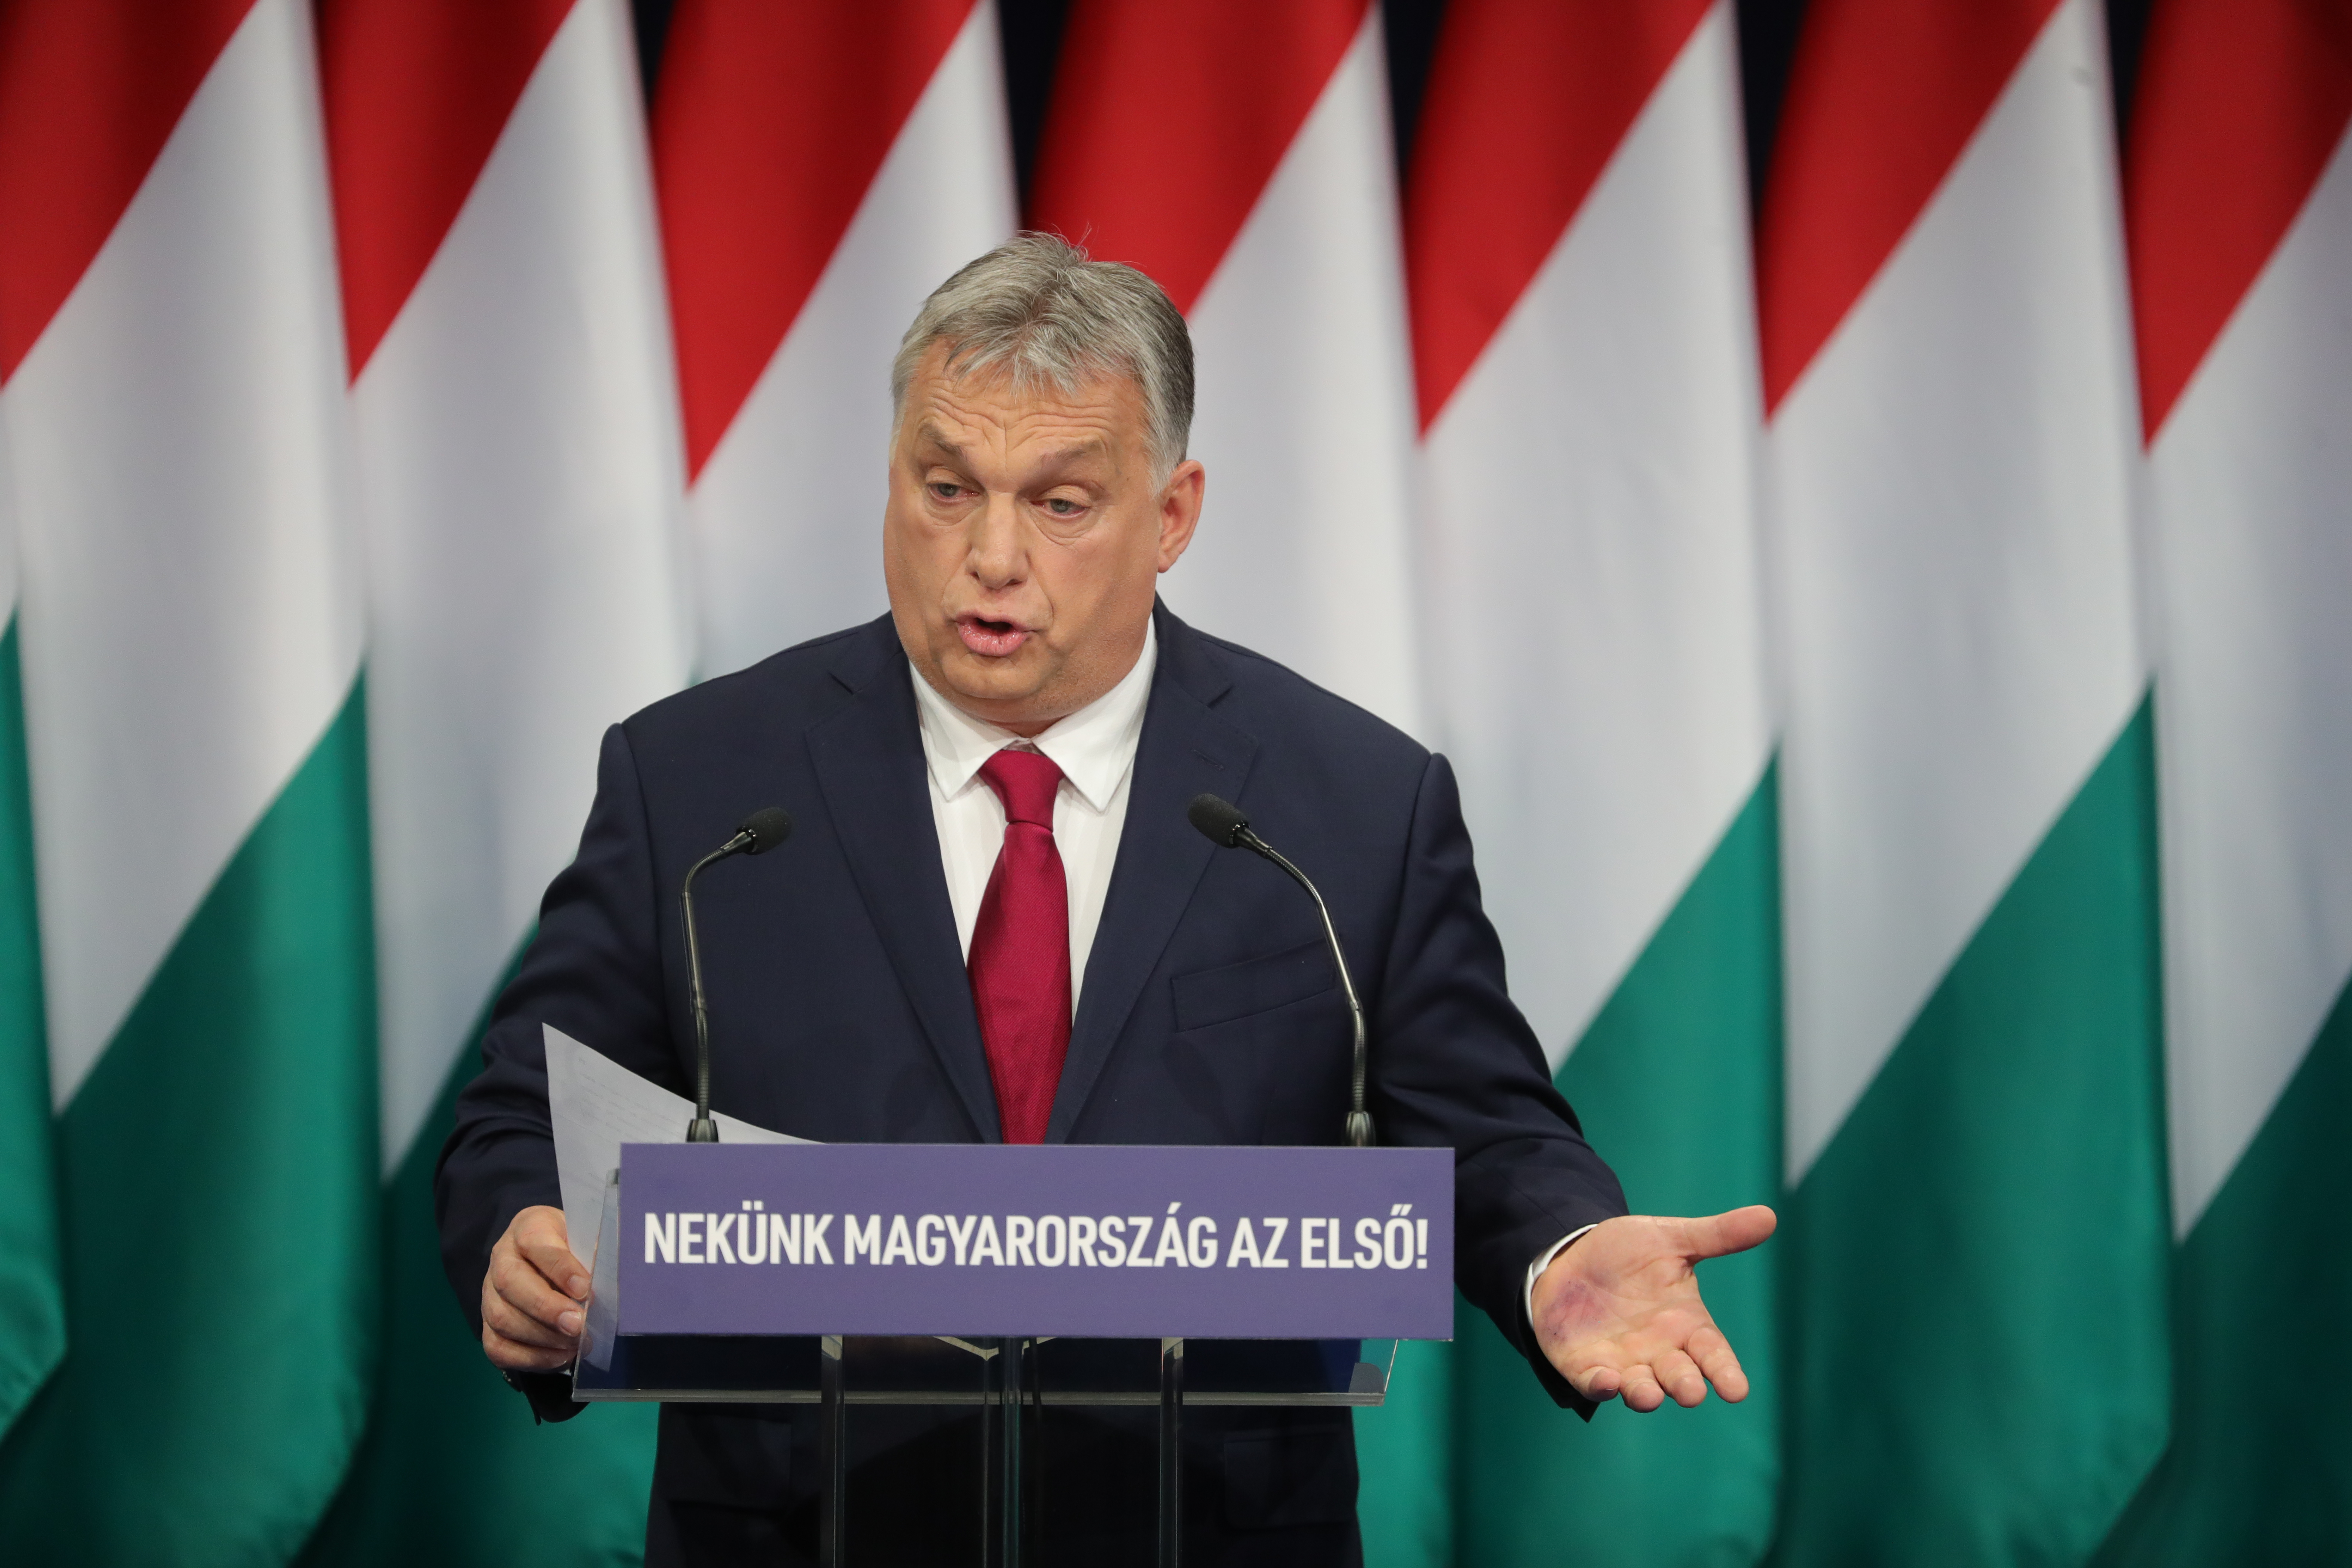 Furcsa kékes foltot vettek észre Orbán Viktor kezén az évértékelő közben -  Blikk